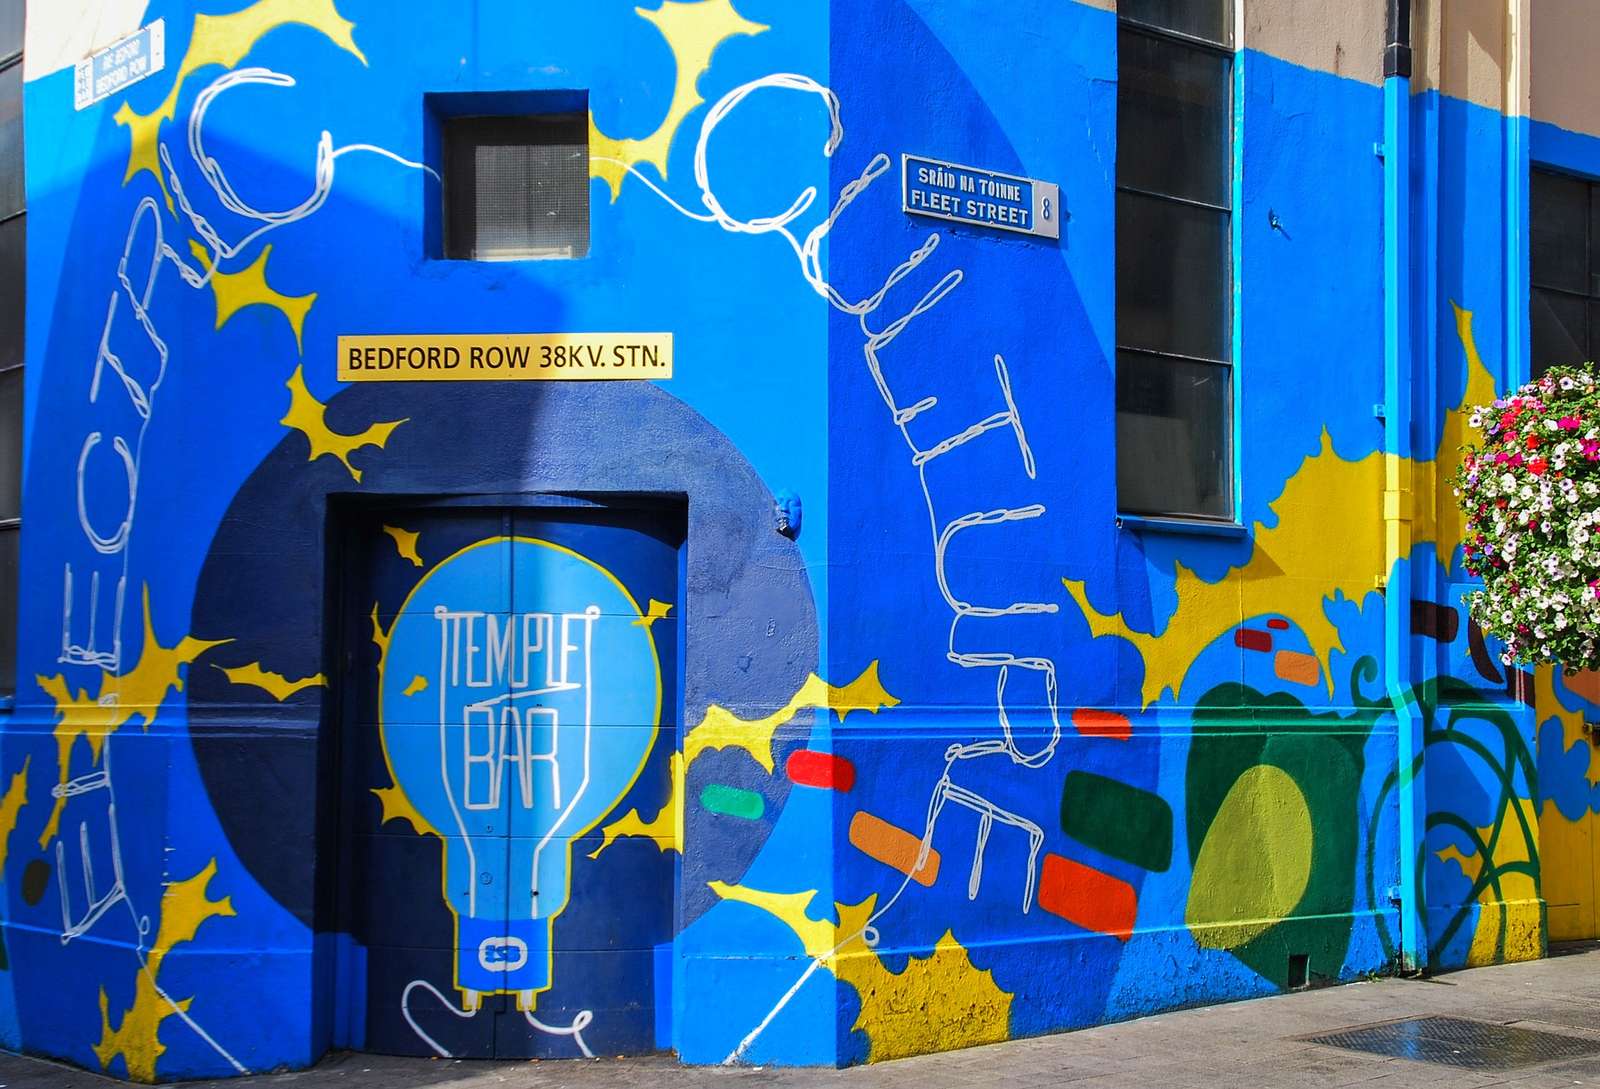 Dublin. Uma fachada colorida no bairro Tempe Bar quebra-cabeças online